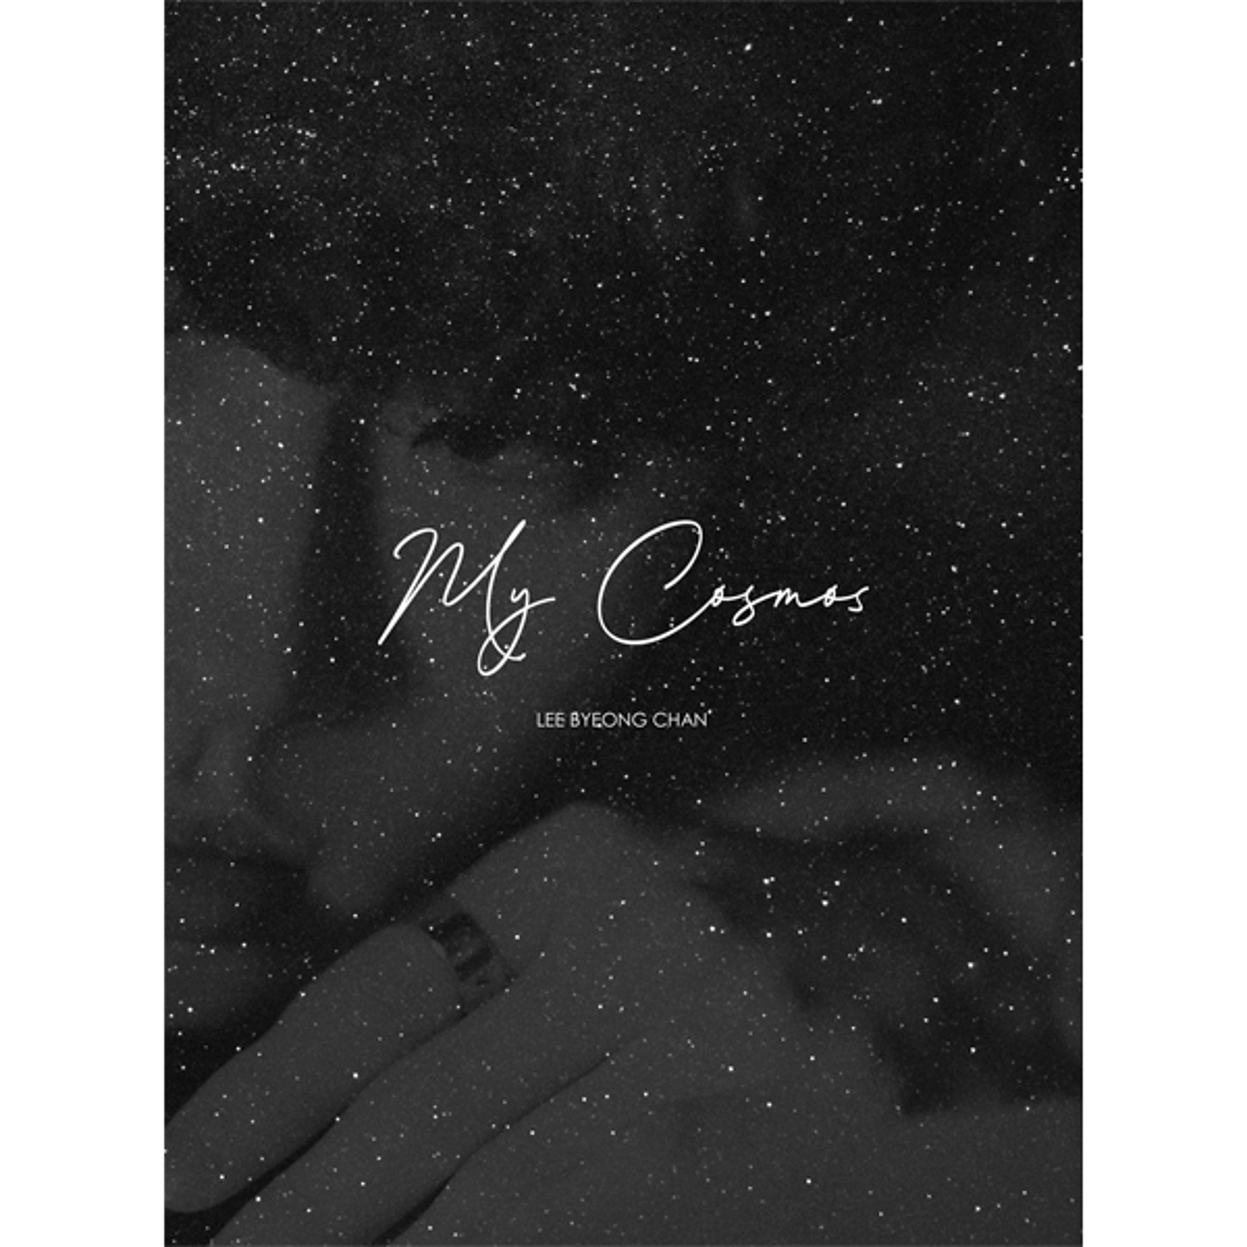 イ·ビョンチャン(Lee Byeong Chan) - ミニアルバム2集 [My Cosmos]